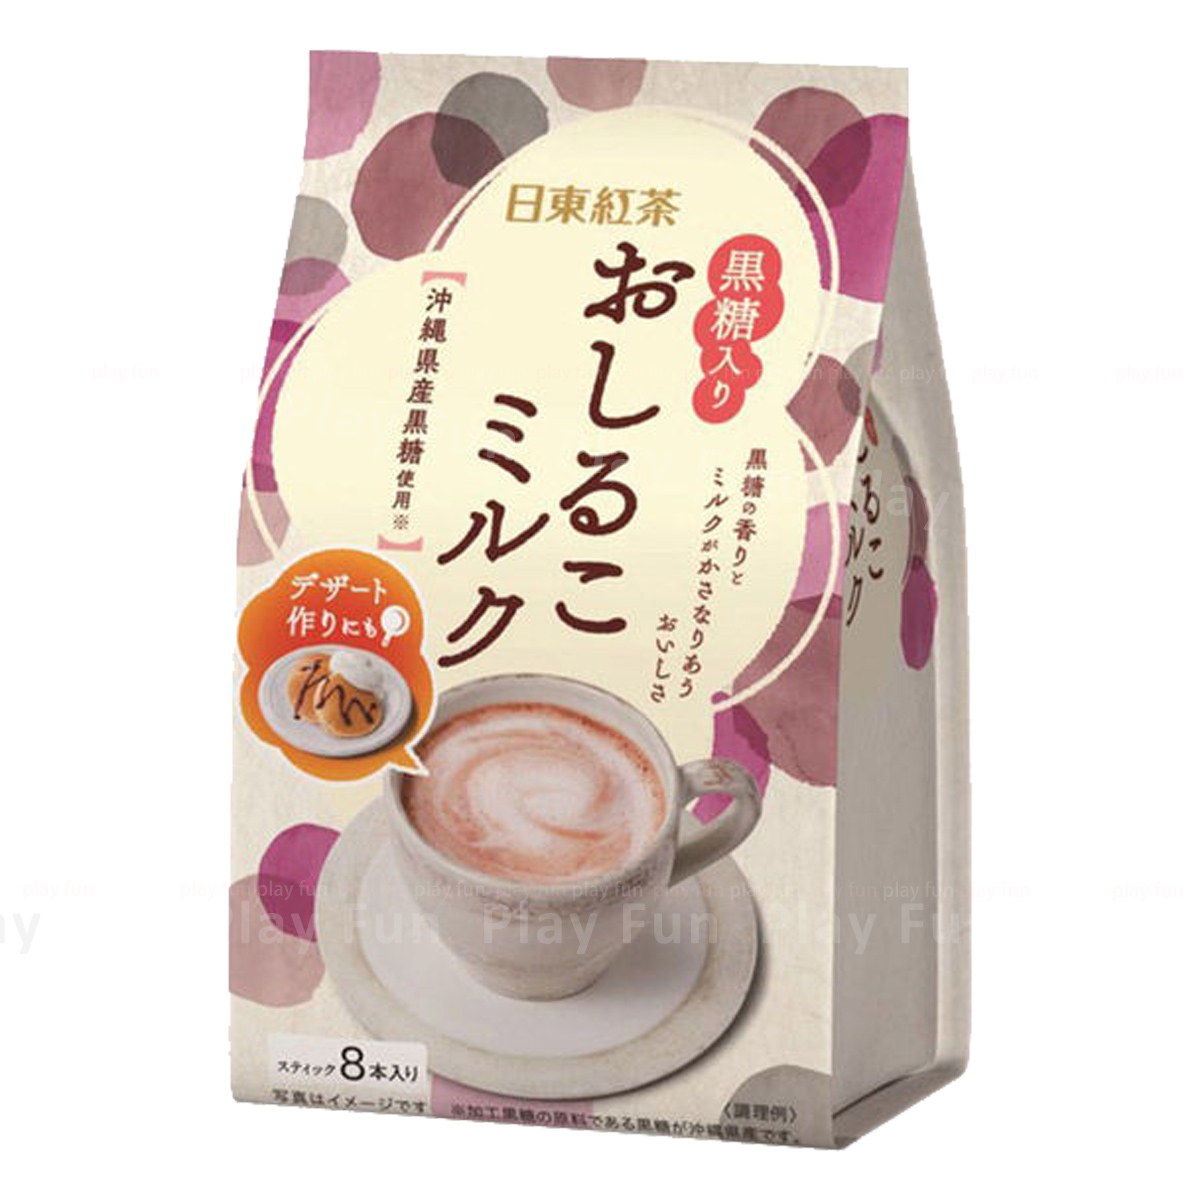 日東紅茶 - 即沖沖繩黑糖牛奶 (8條)